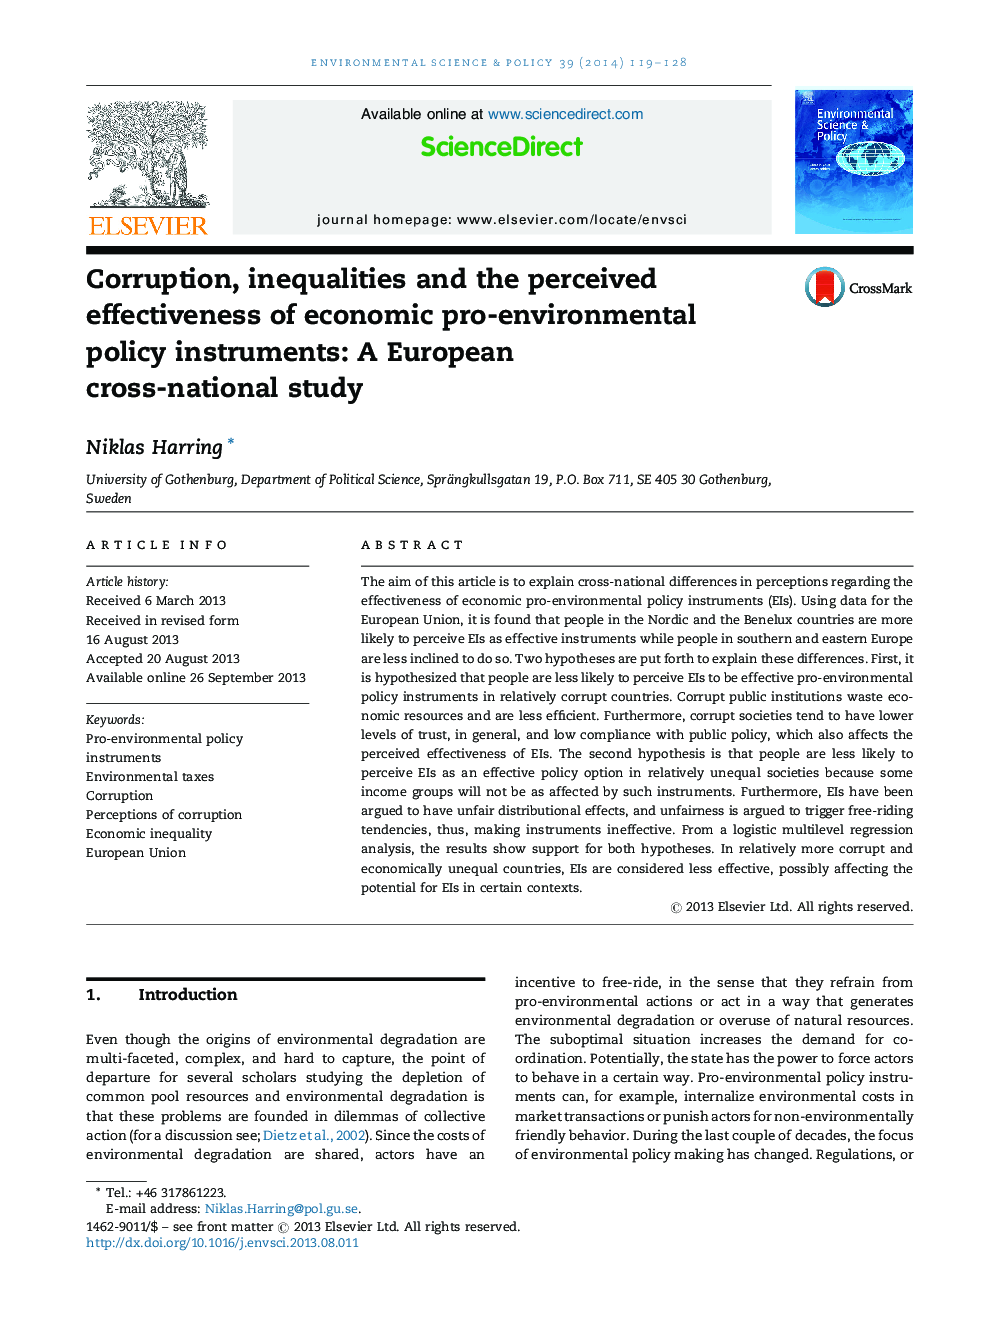 فساد، نابرابری و اثربخشی ادراک شده ابزارهای سیاست های اقتصادی محیطی: یک مطالعه بین المللی اروپایی 